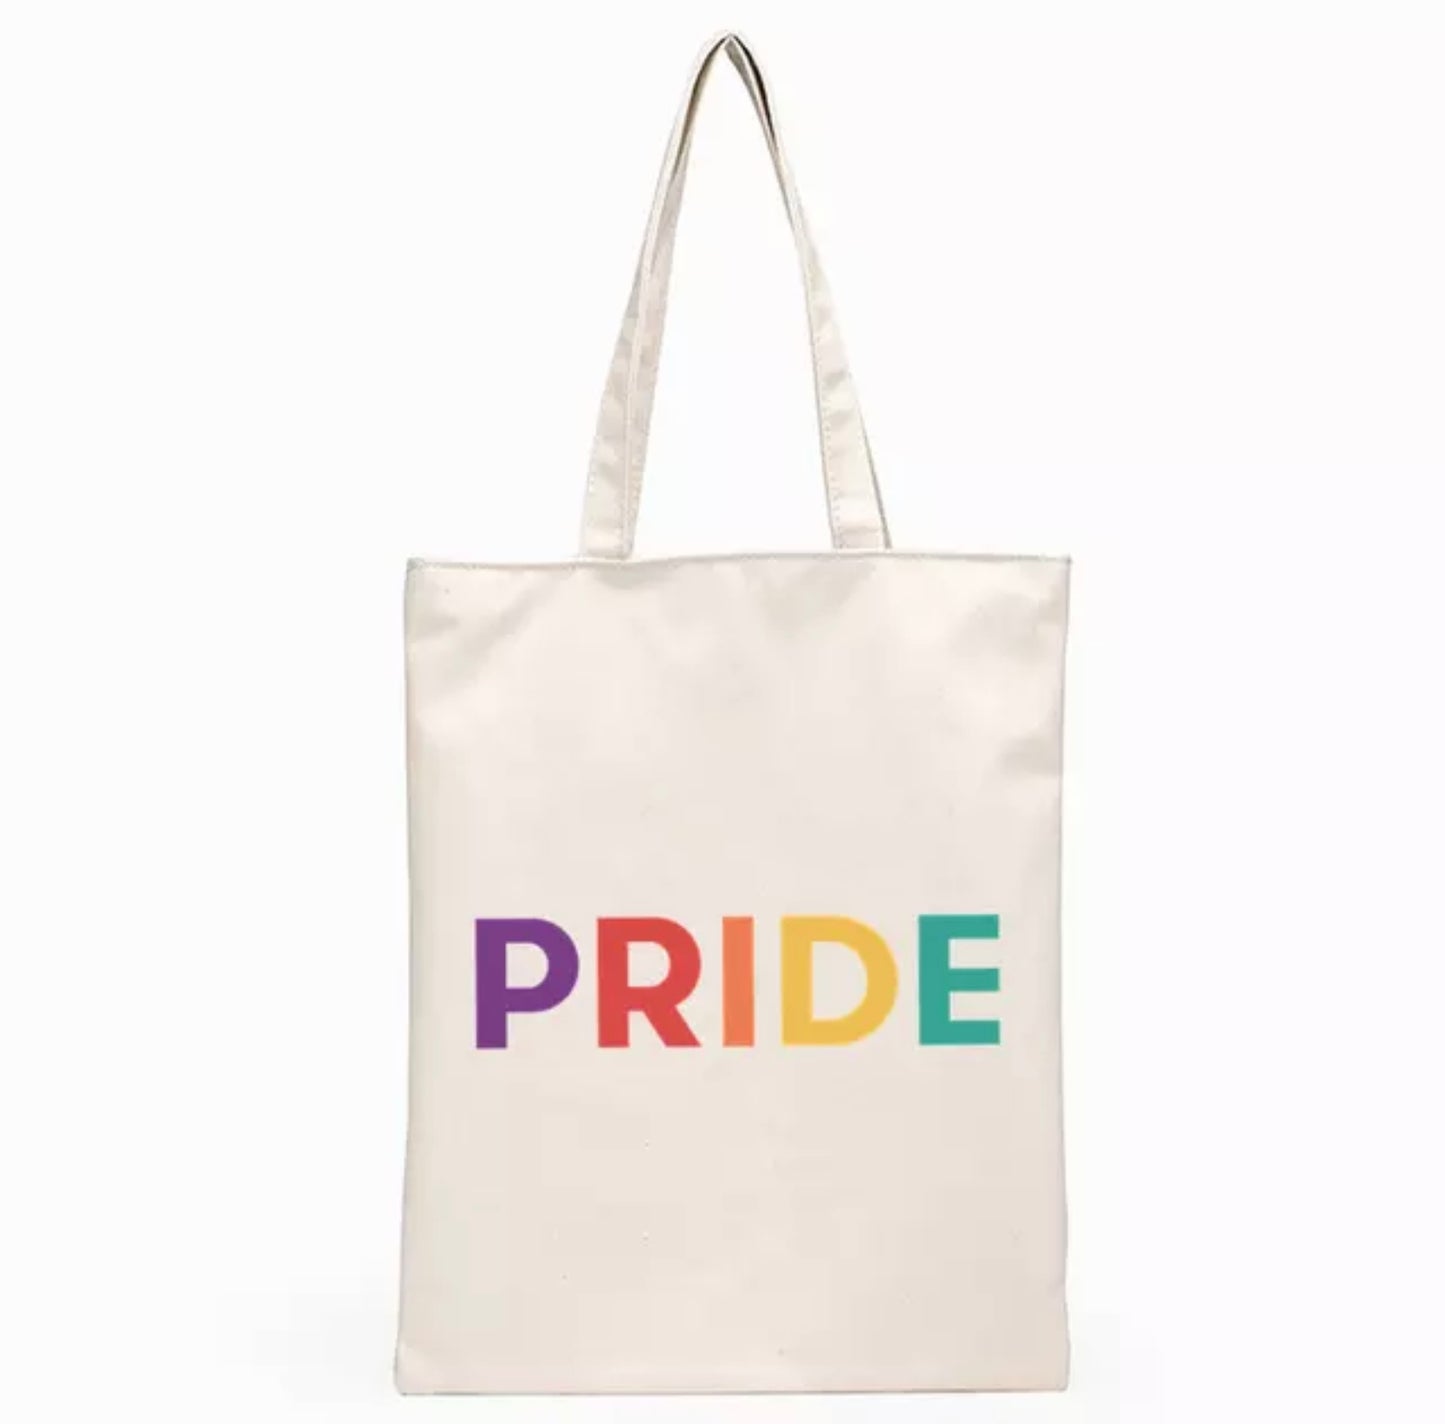 Tote Bag  (Pride)